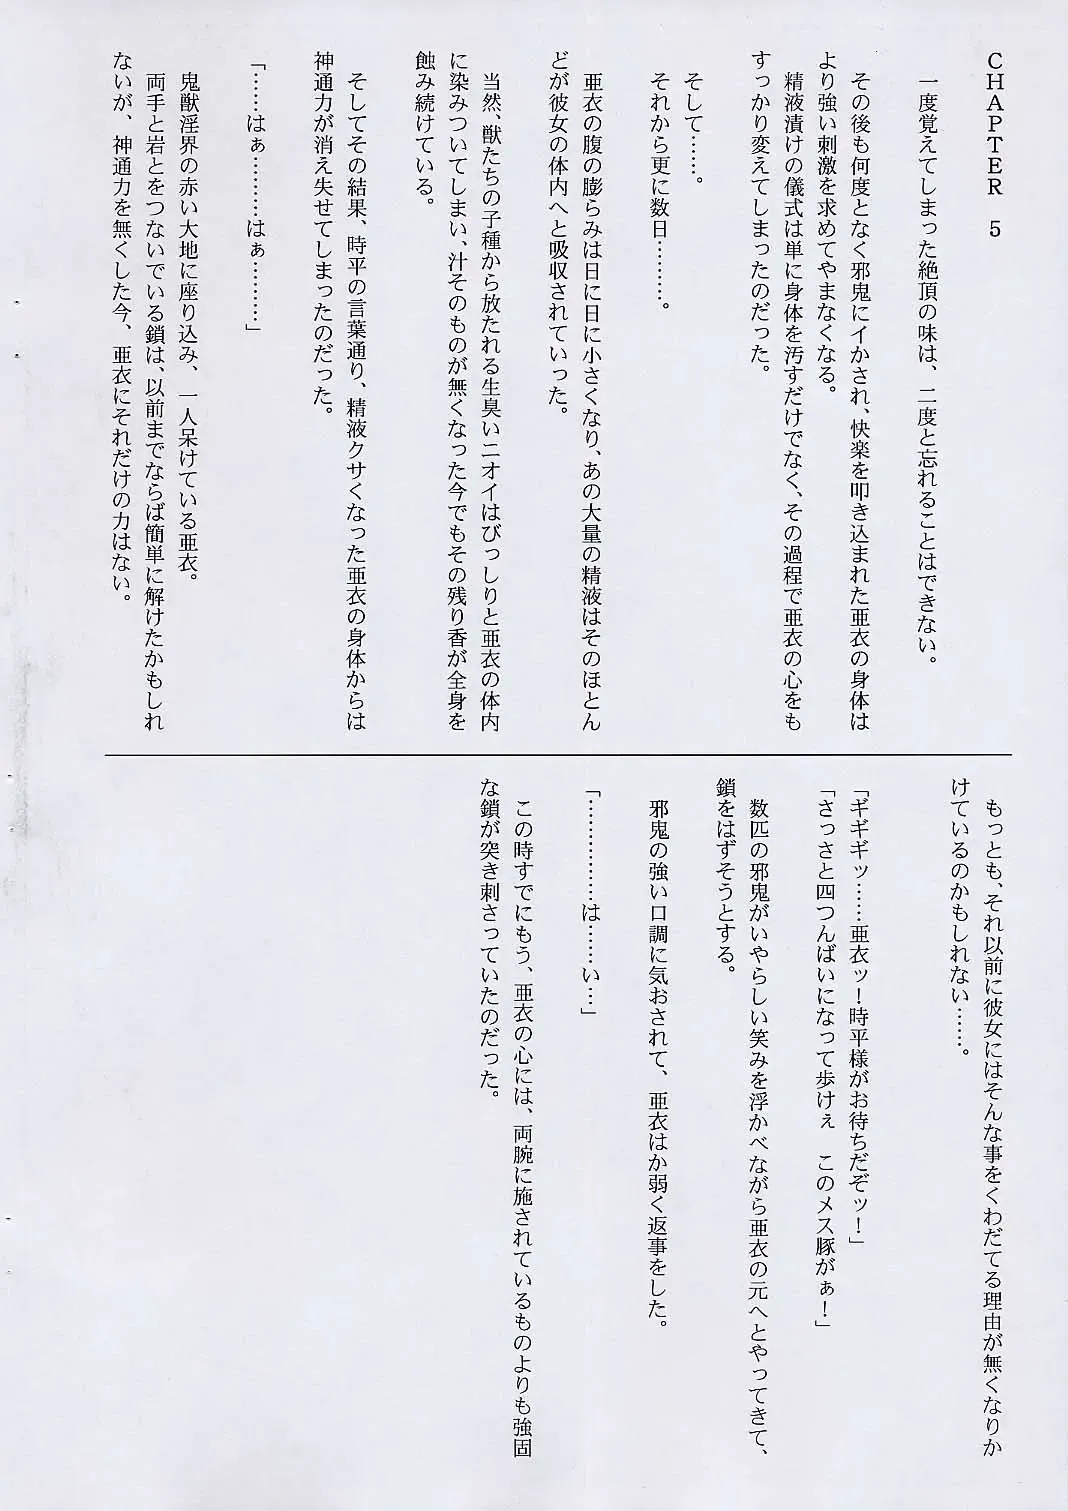 [Izumi - Reizei] Rokujuuroku - Cyclone no Copybon 4 Fhentai.net - Page 10